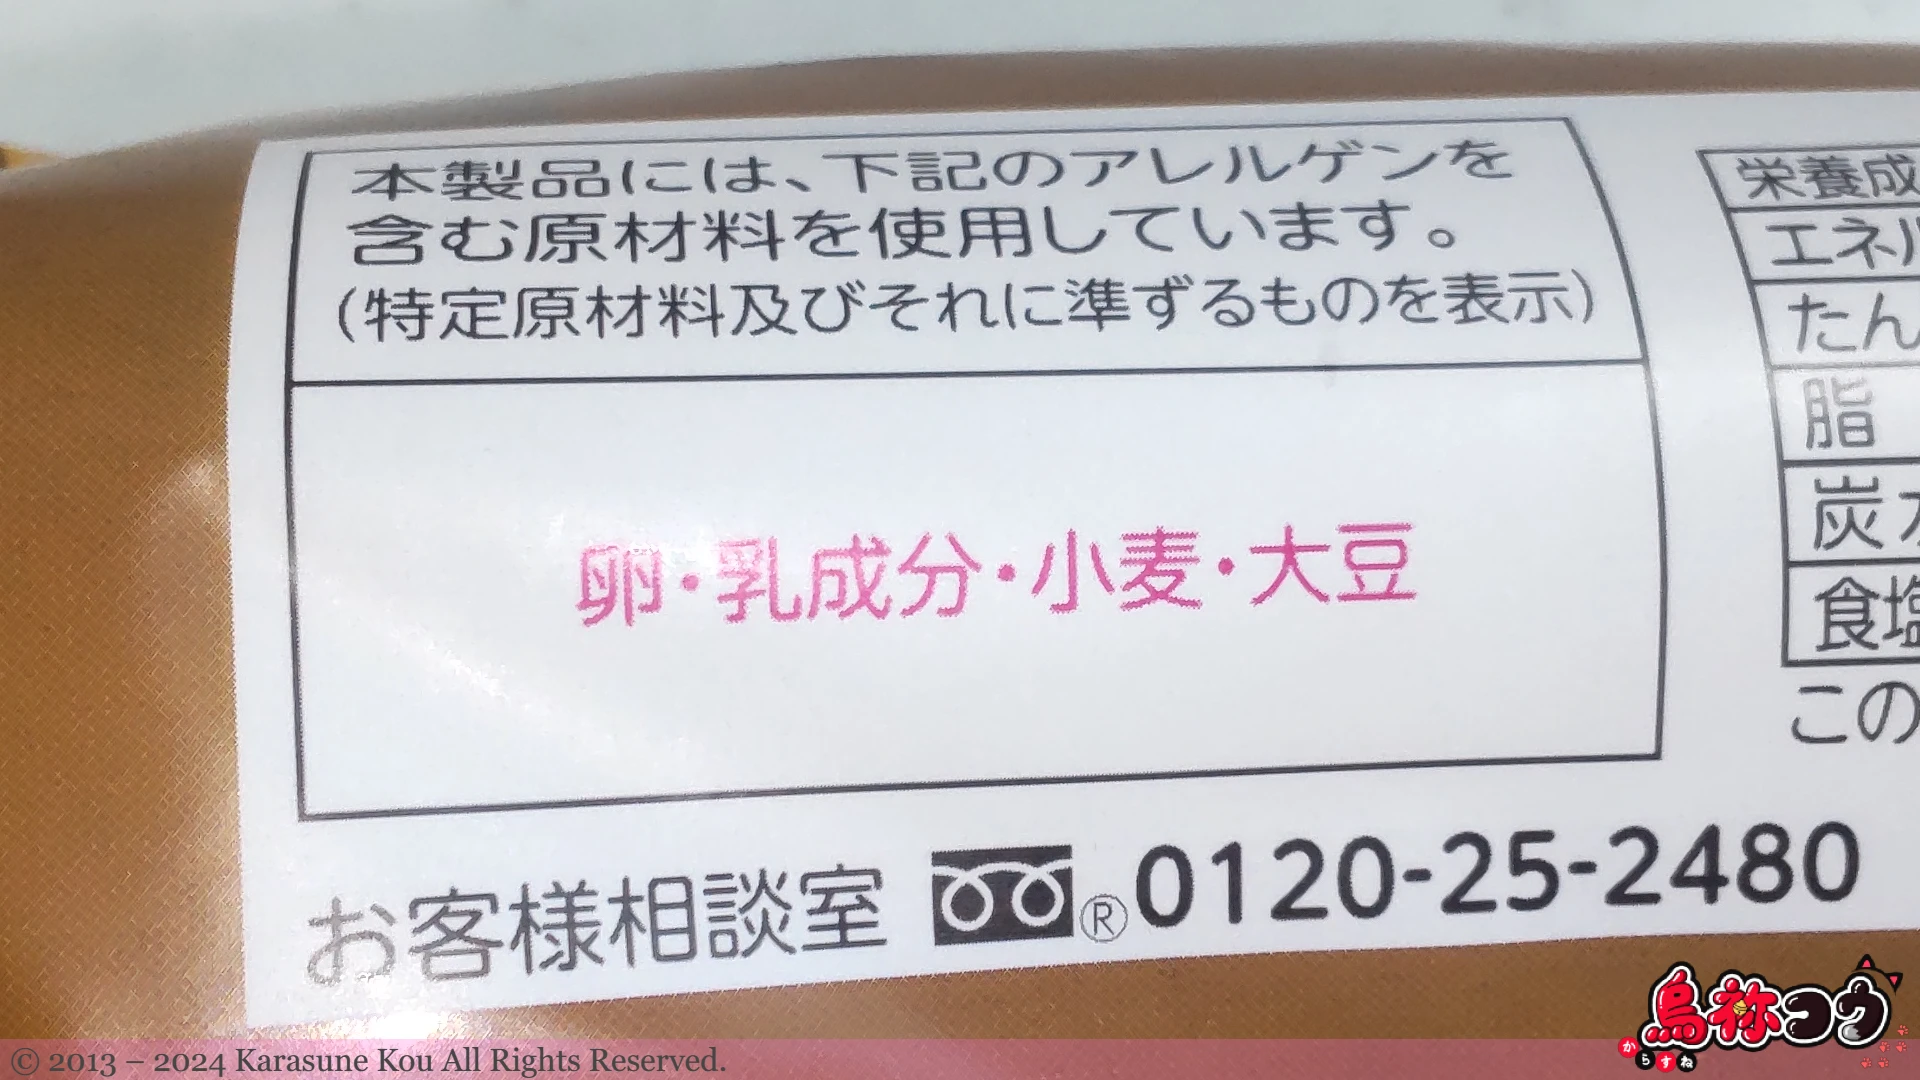 関珈琲コッペのアレルゲン物質情報です